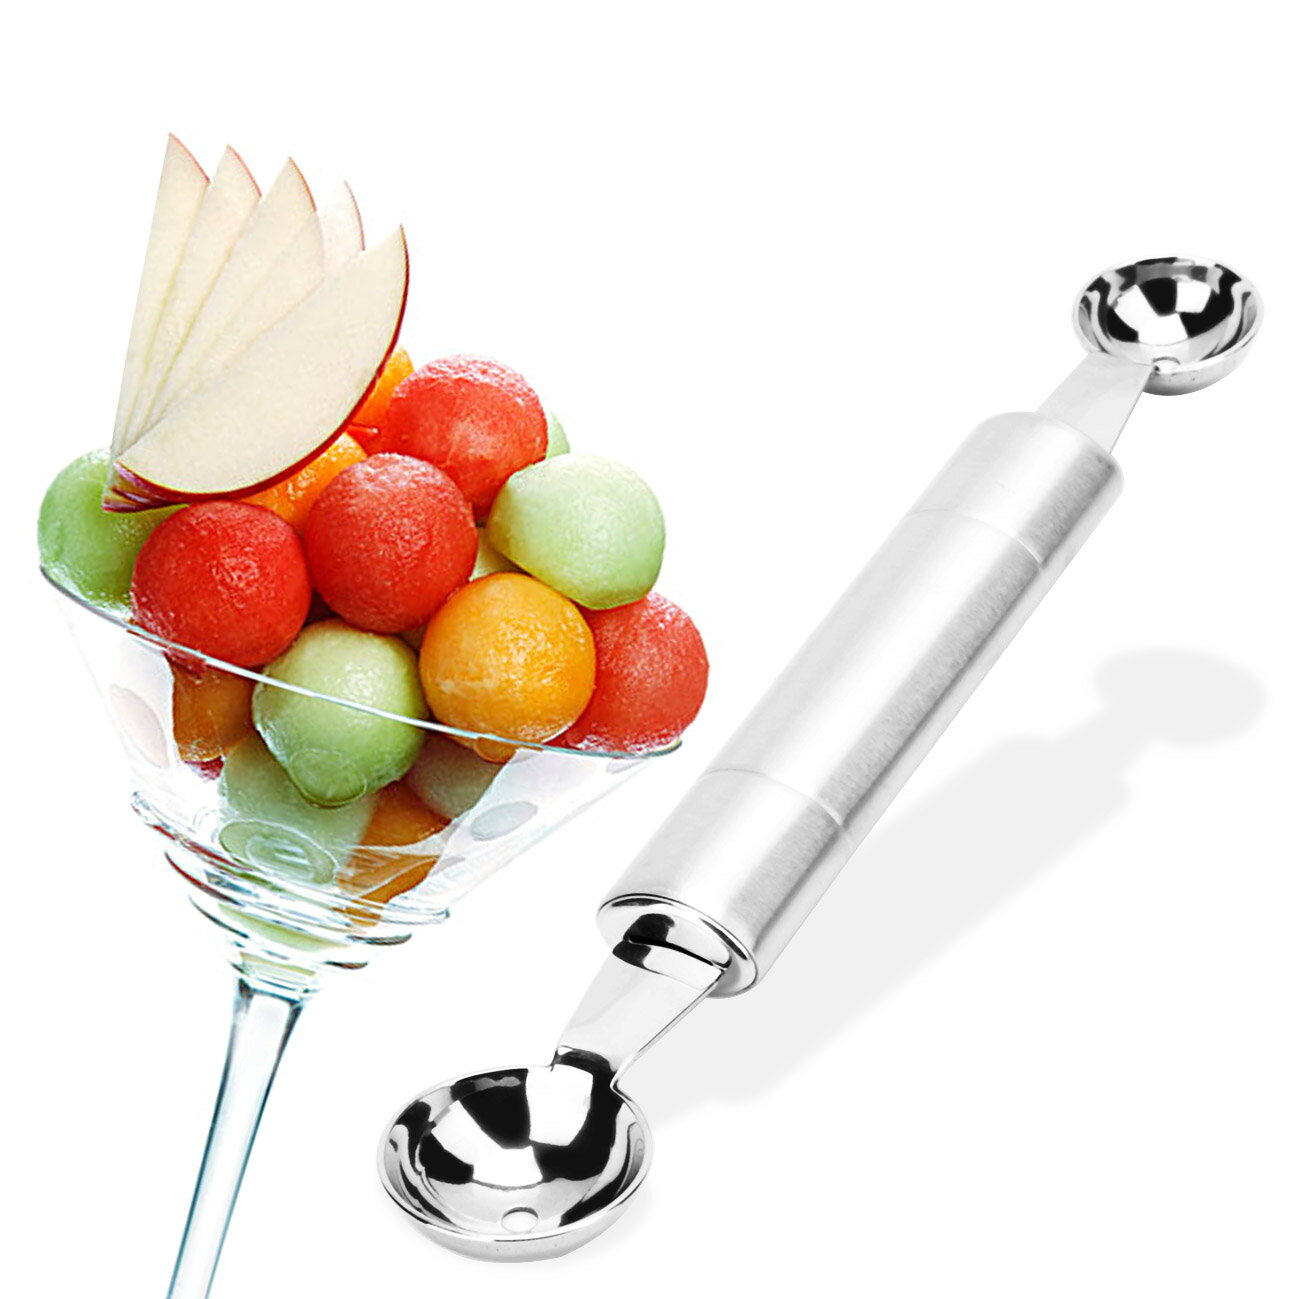 全不銹鋼雙頭水果挖球器雪糕勺雙孔冰激凌勺家居實用創意工具